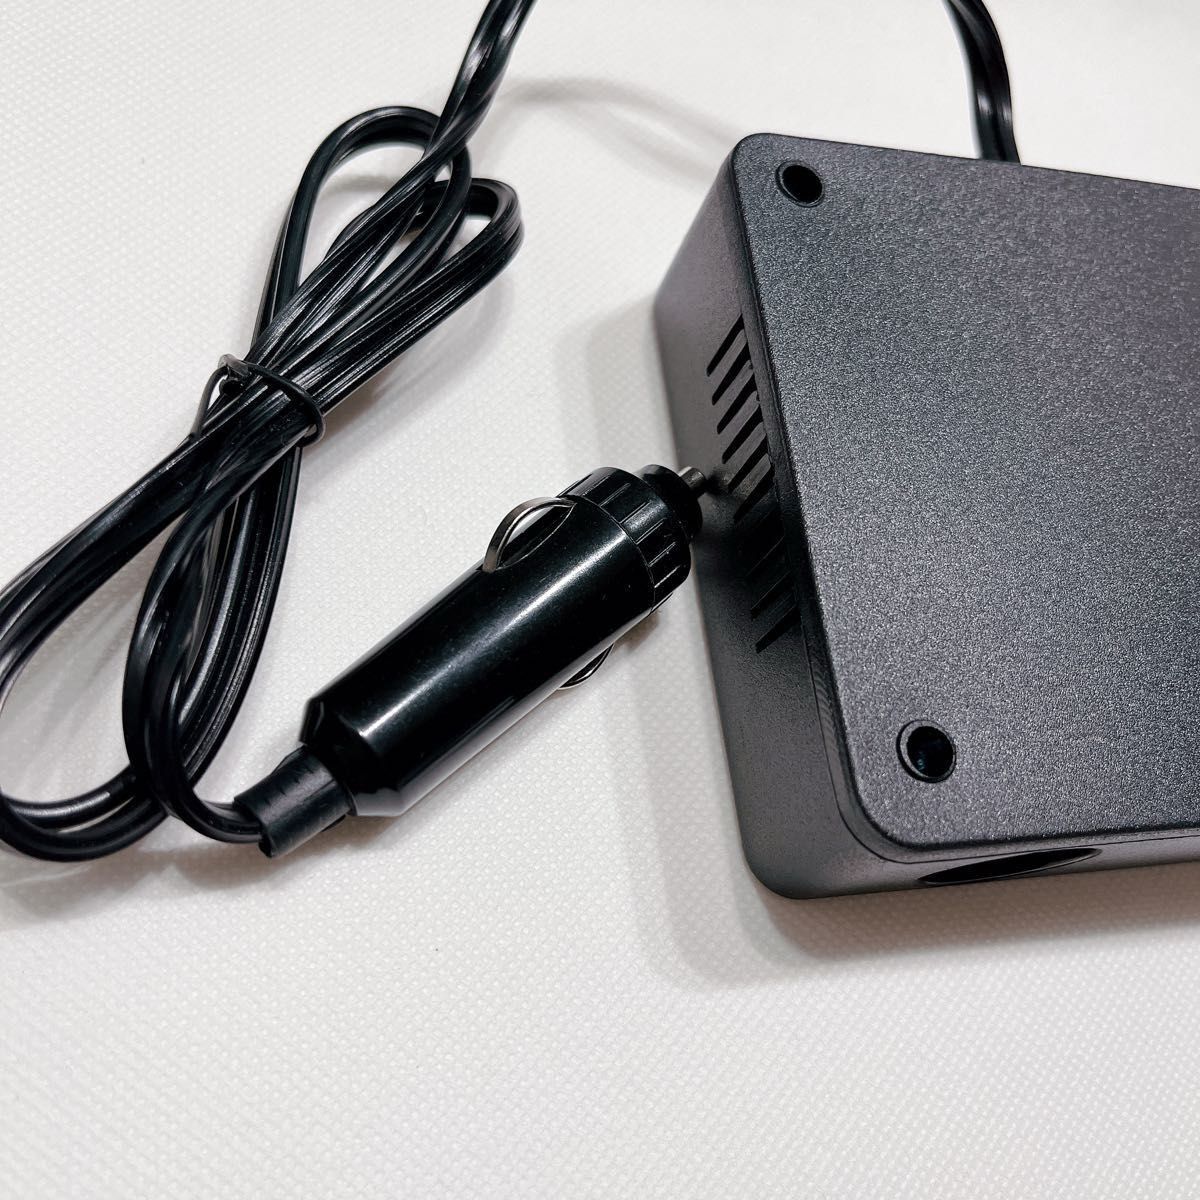  инвертер 12V24V совместного пользования USB прикуриватель розетка внезапный скорость зарядка изменение 